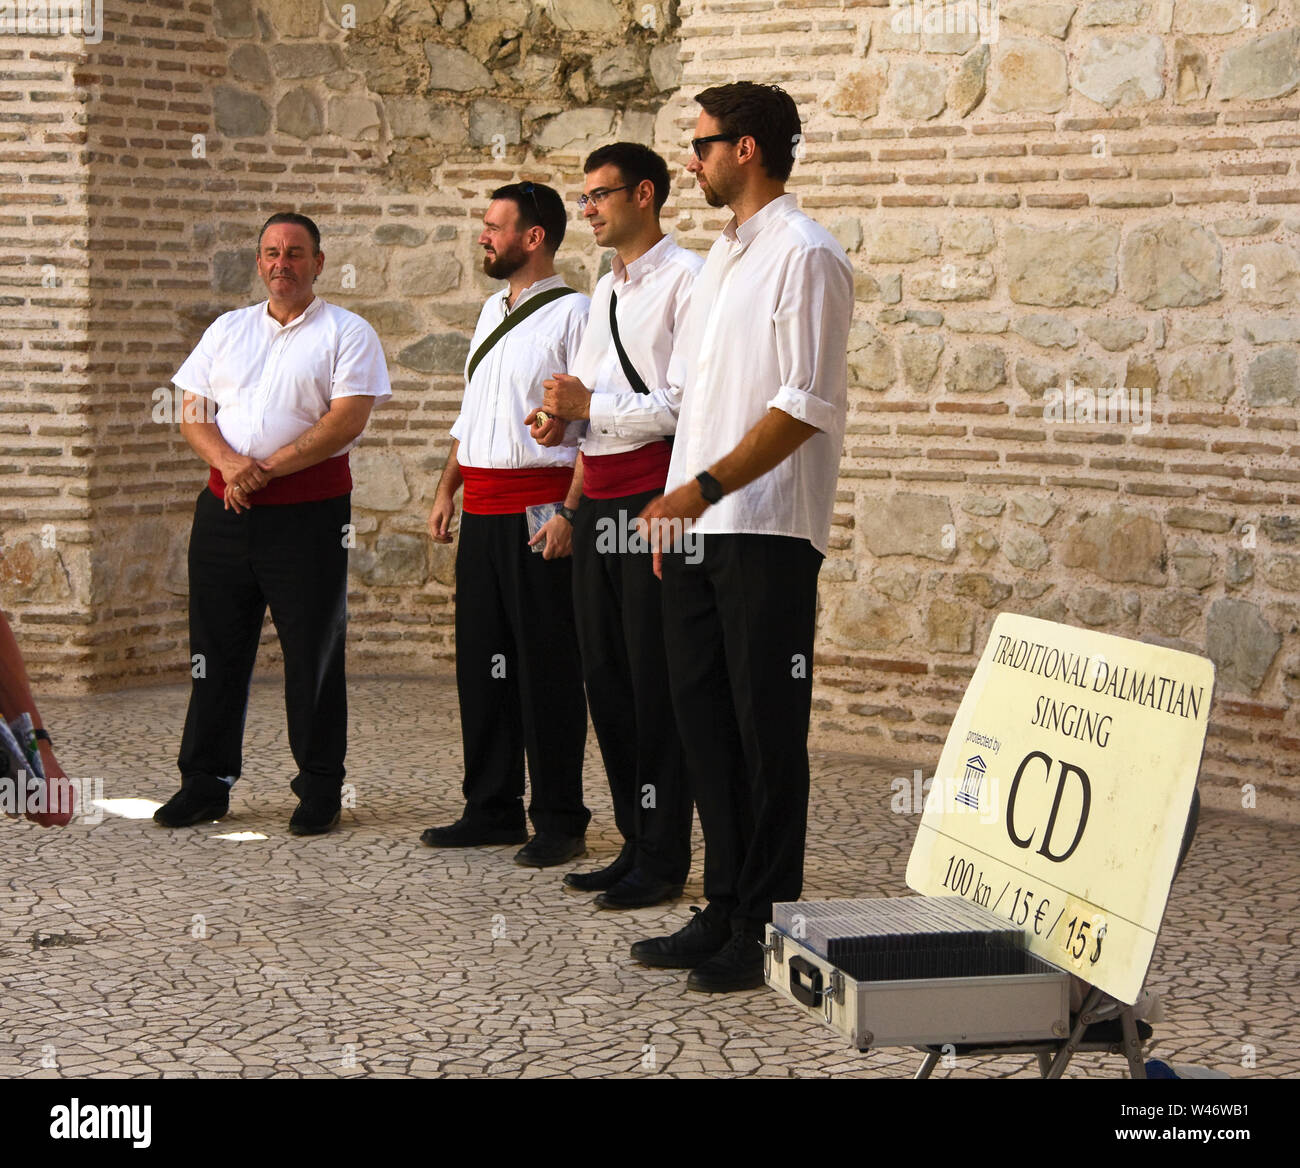 Gruppo Klapa cantare a cappella, uomini divertenti, musica folk, armonioso,  pubblico spettacolo, il Palazzo di Diocleziano, Dalmazia centrale, Split,  Croazia Foto stock - Alamy